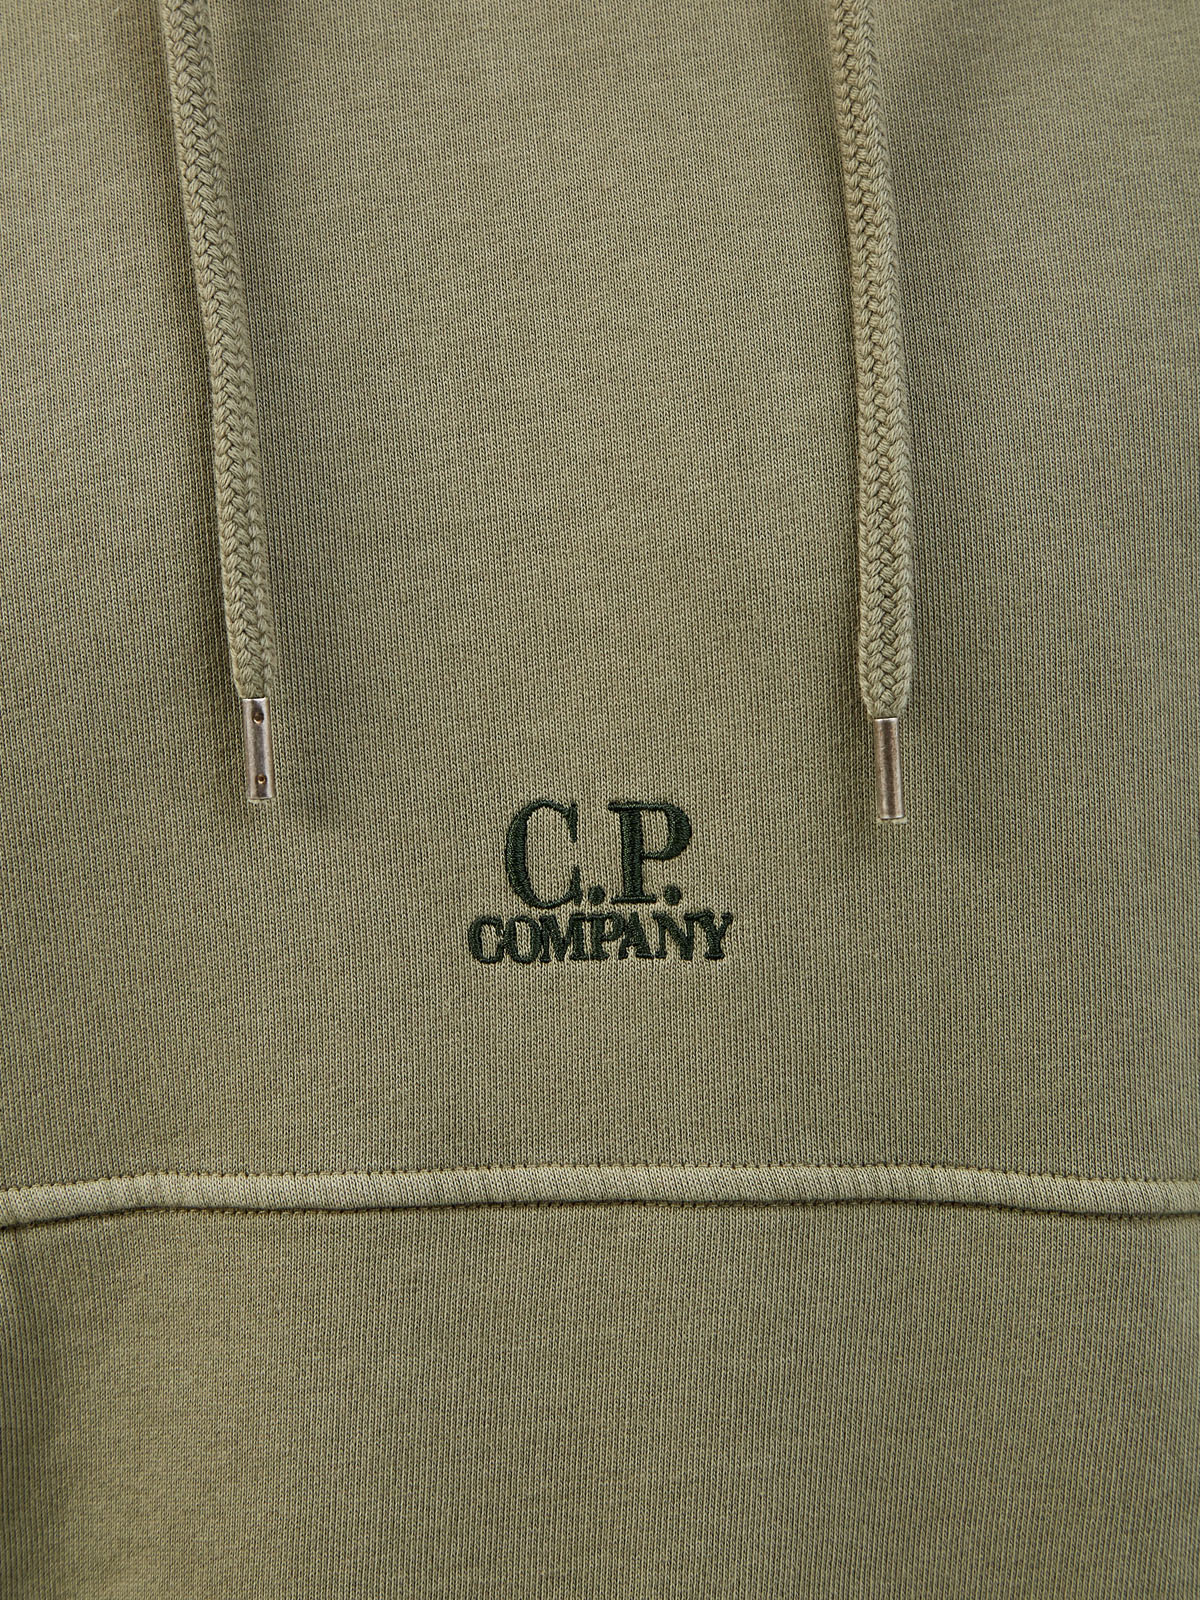 Худи из хлопка с окрашиванием Resist Dyeing и вышитым логотипом C.P.COMPANY, цвет зеленый, размер L;XL;2XL - фото 5